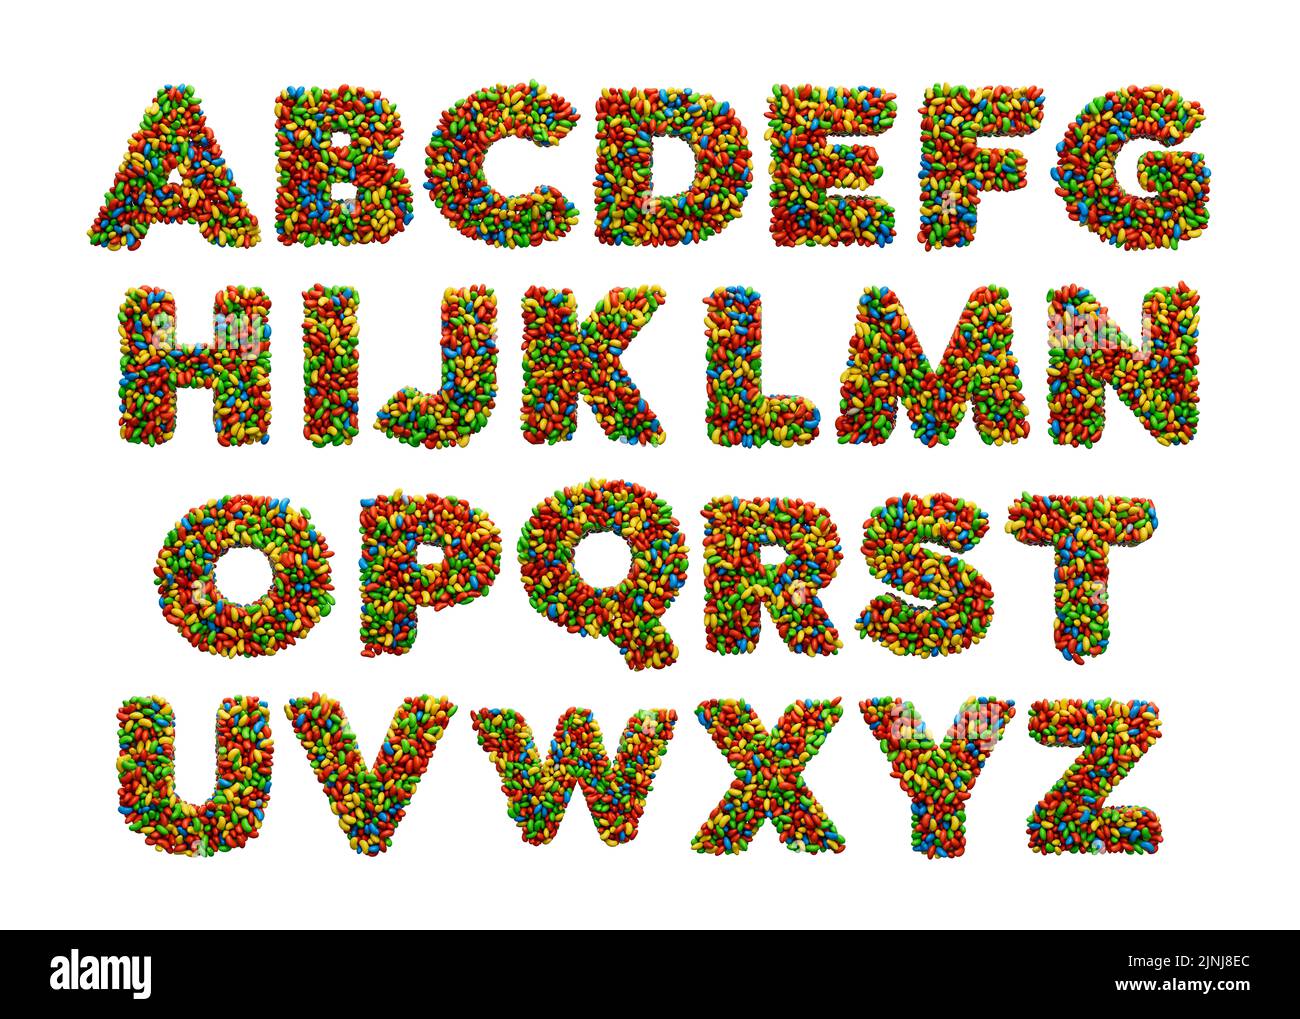 Un rendu 3D de l'alphabet anglais coloré de A à Z sur fond blanc Banque D'Images